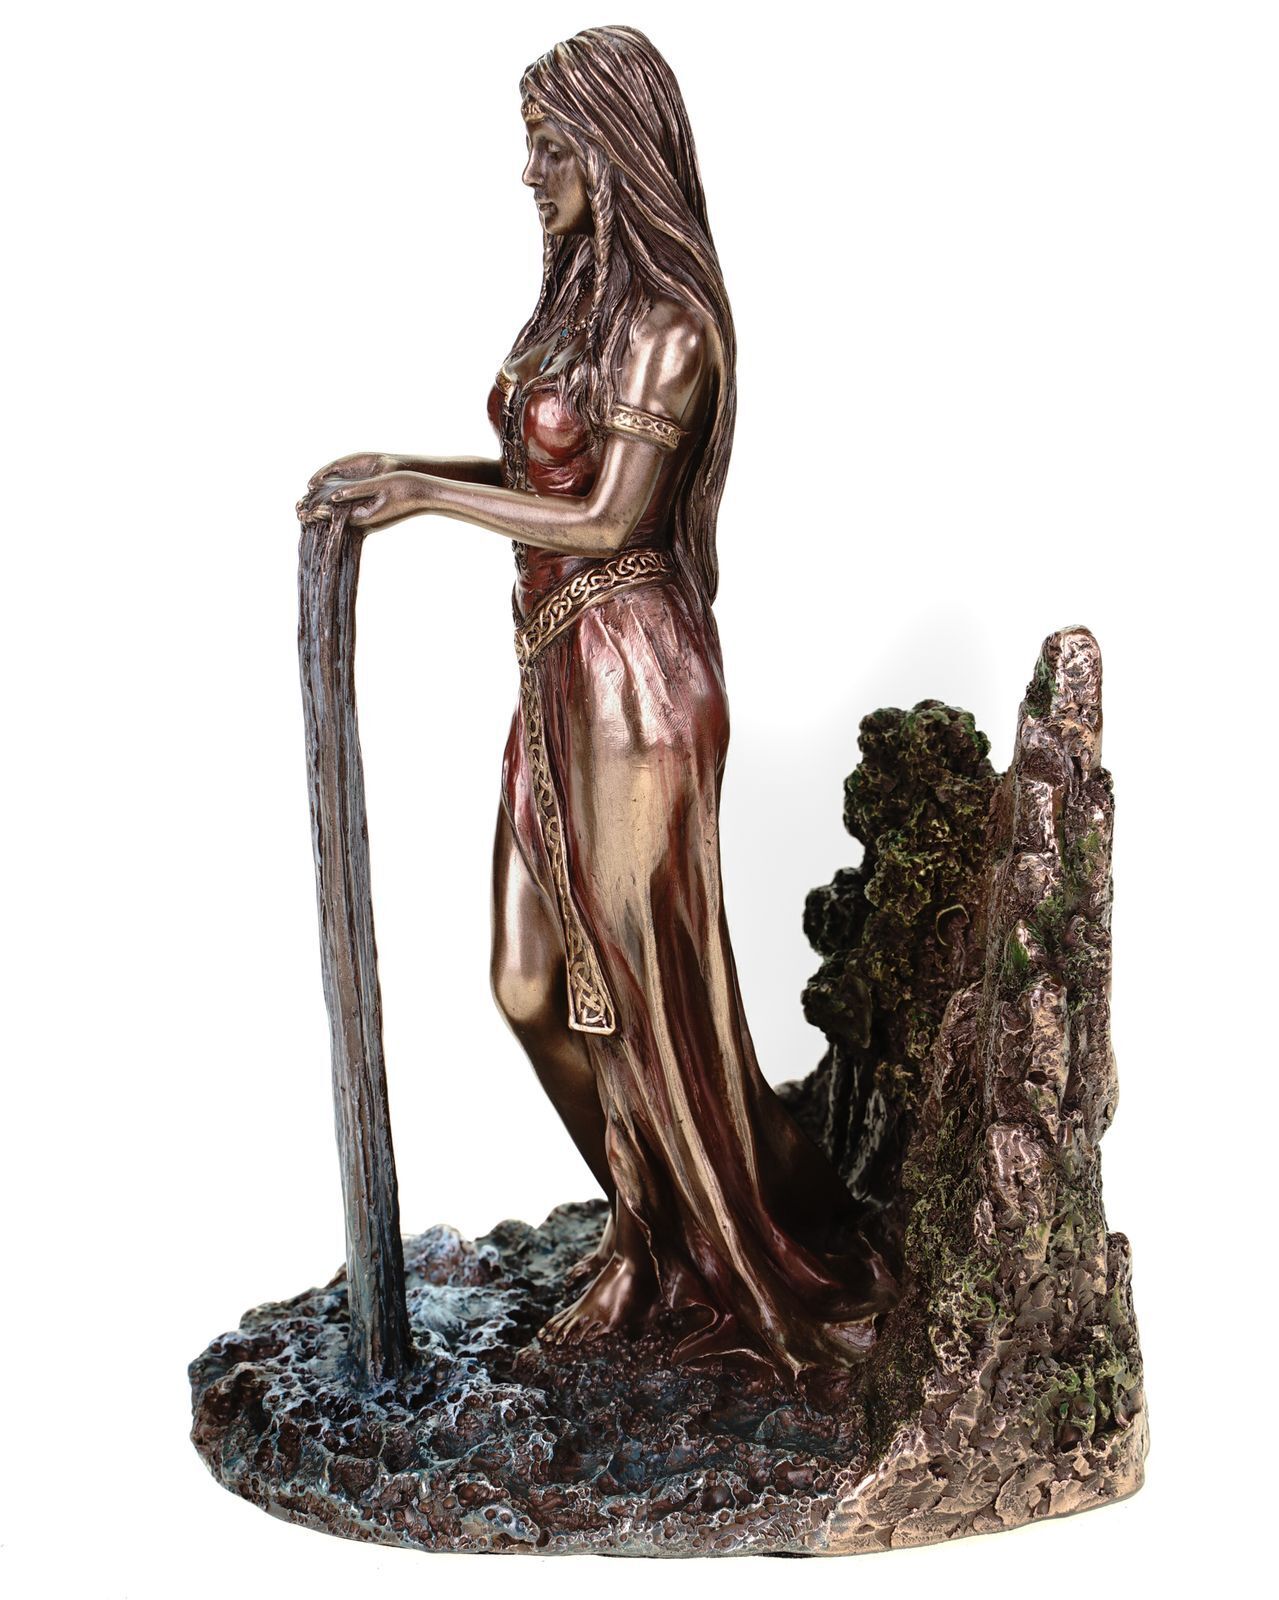 Göttin Danu keltische Erdmutter,aus Kunststein,von Hand bronziertcoloriert by V